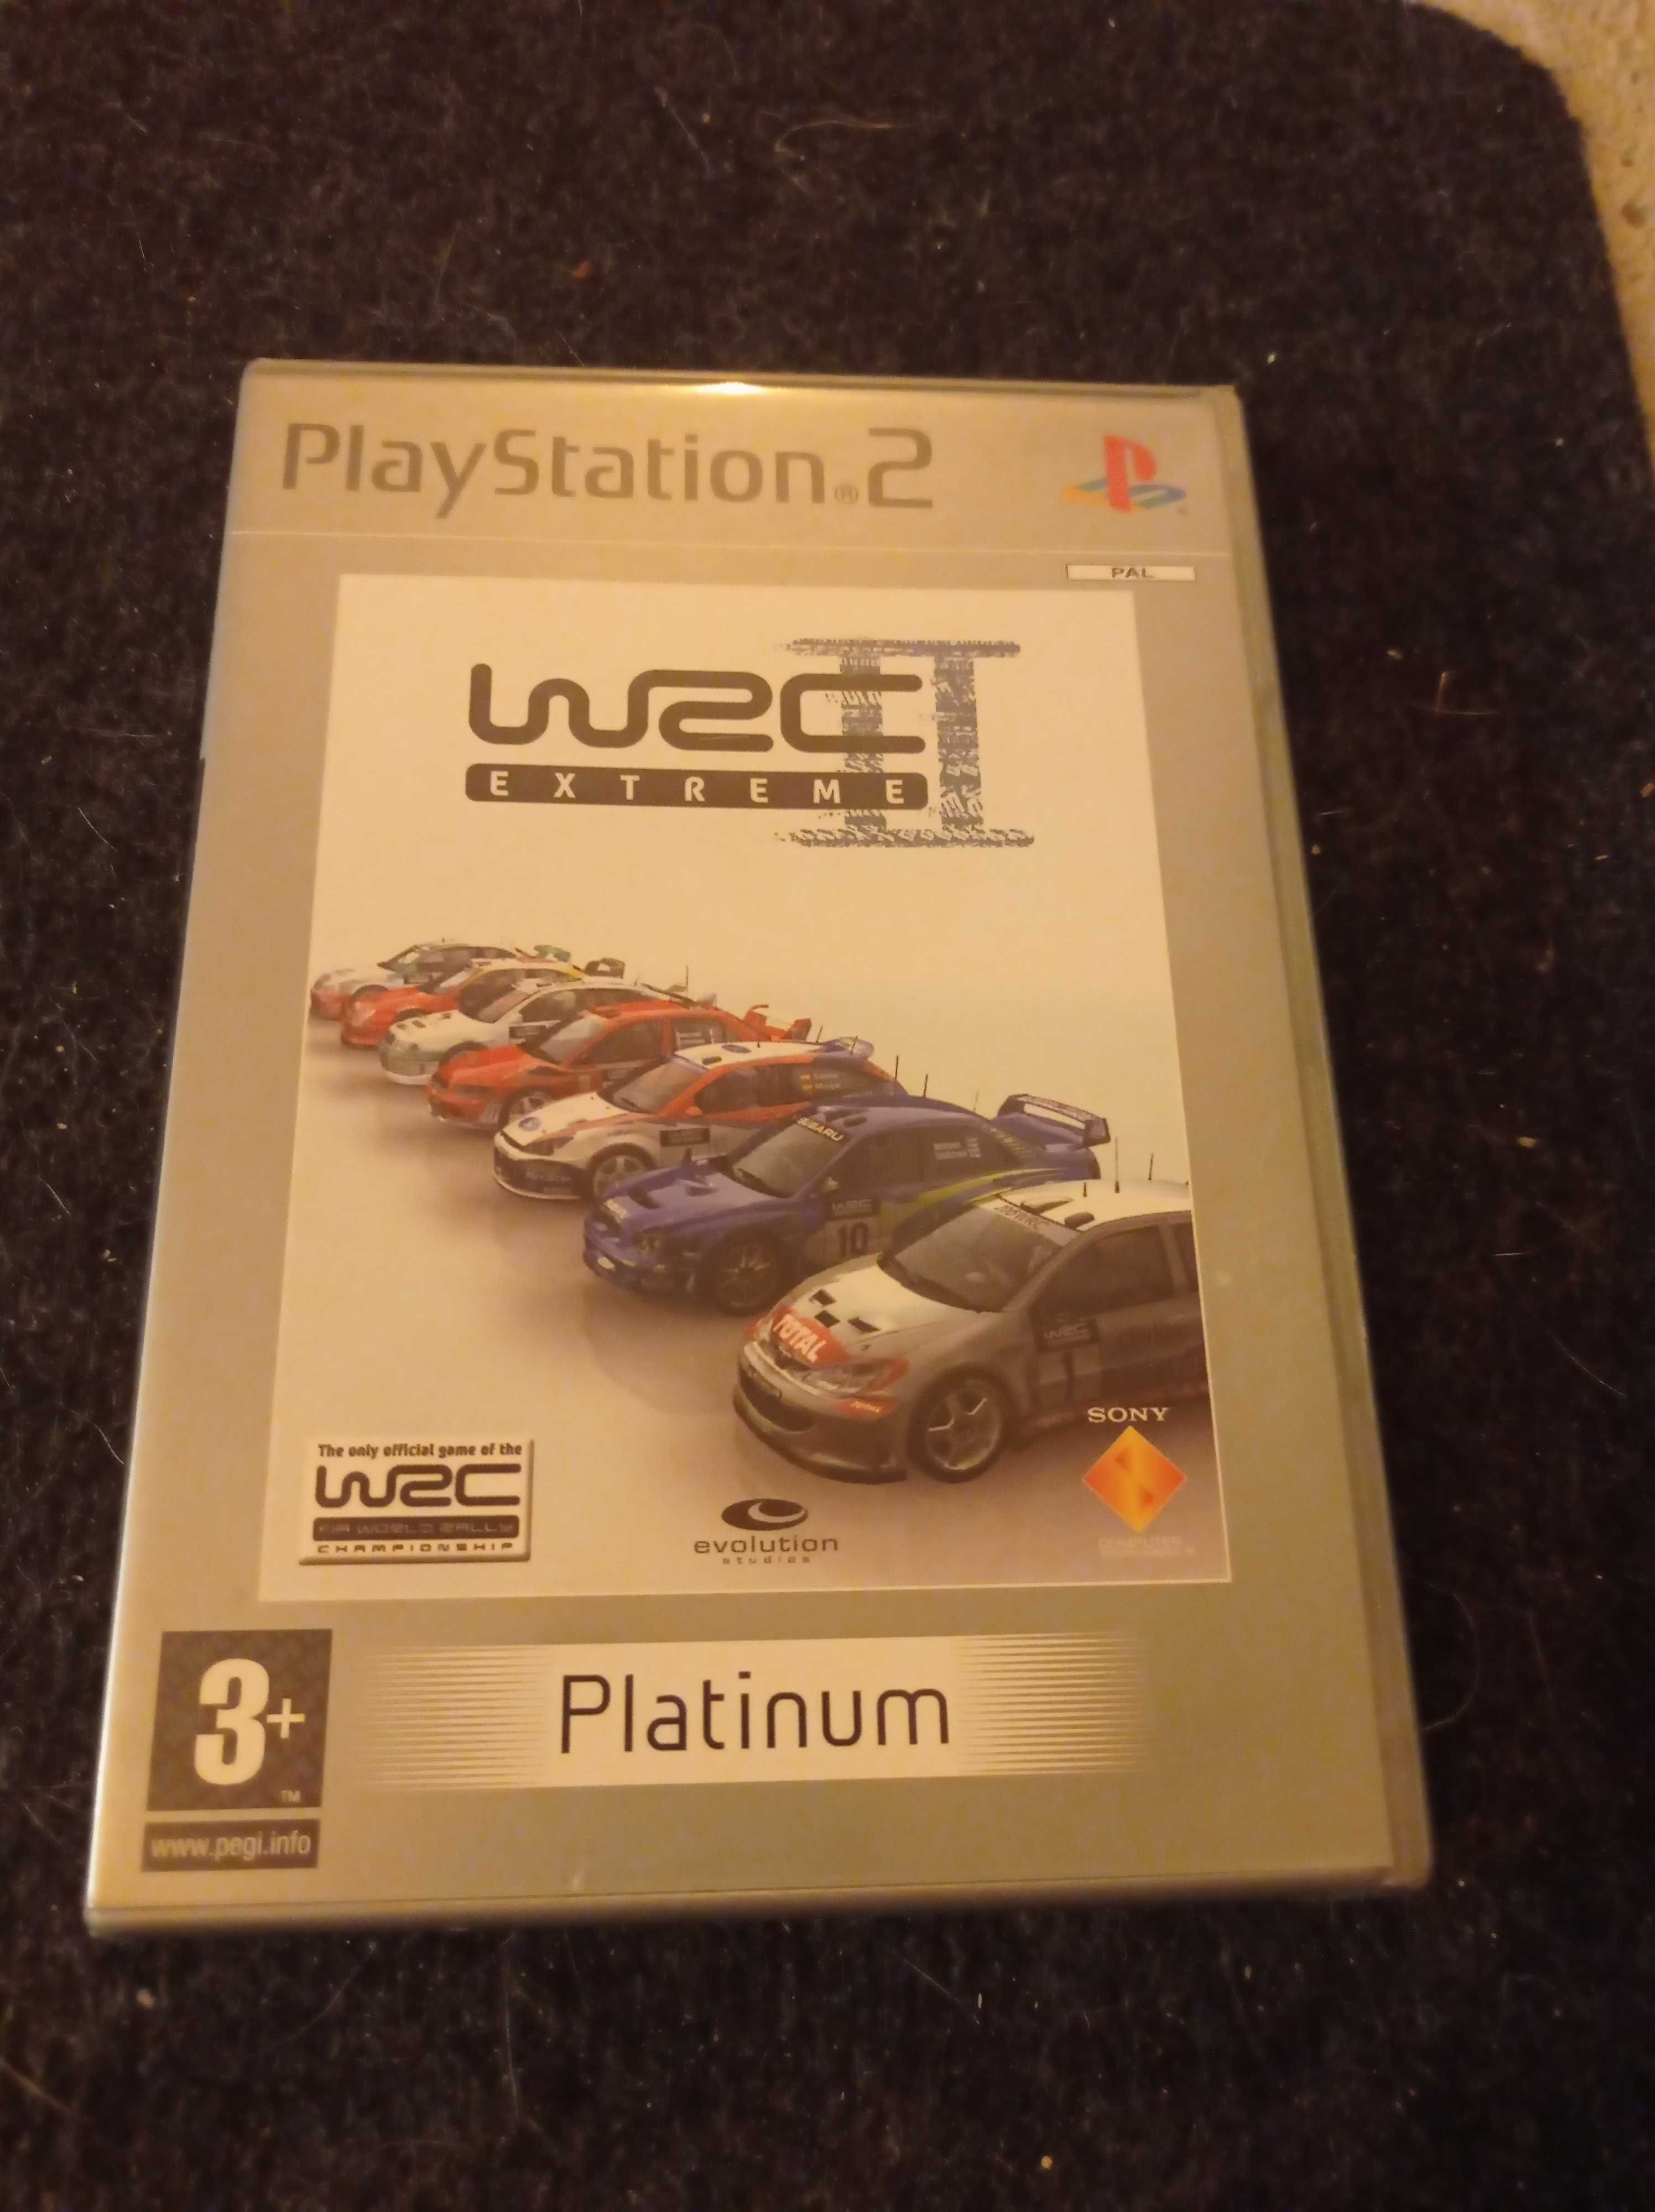 Gra WRC II Extreme PlayStation 2